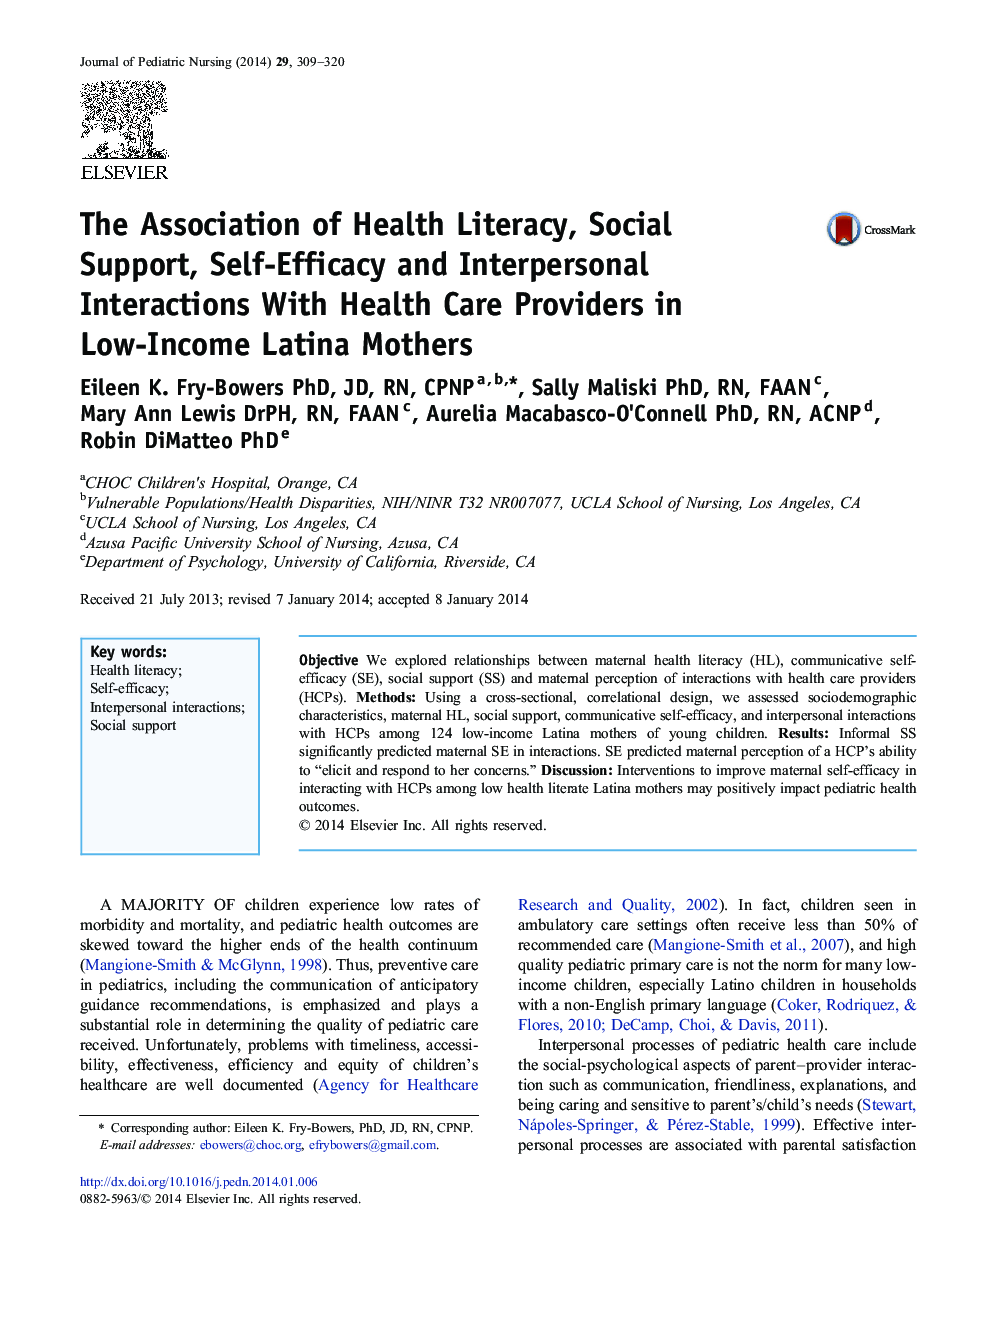 رابطه سواد بهداشتی، حمایت اجتماعی، خودآموزی و تعاملات میان فردی با ارائه دهندگان خدمات بهداشتی در مادران لاتین با درآمد پایین